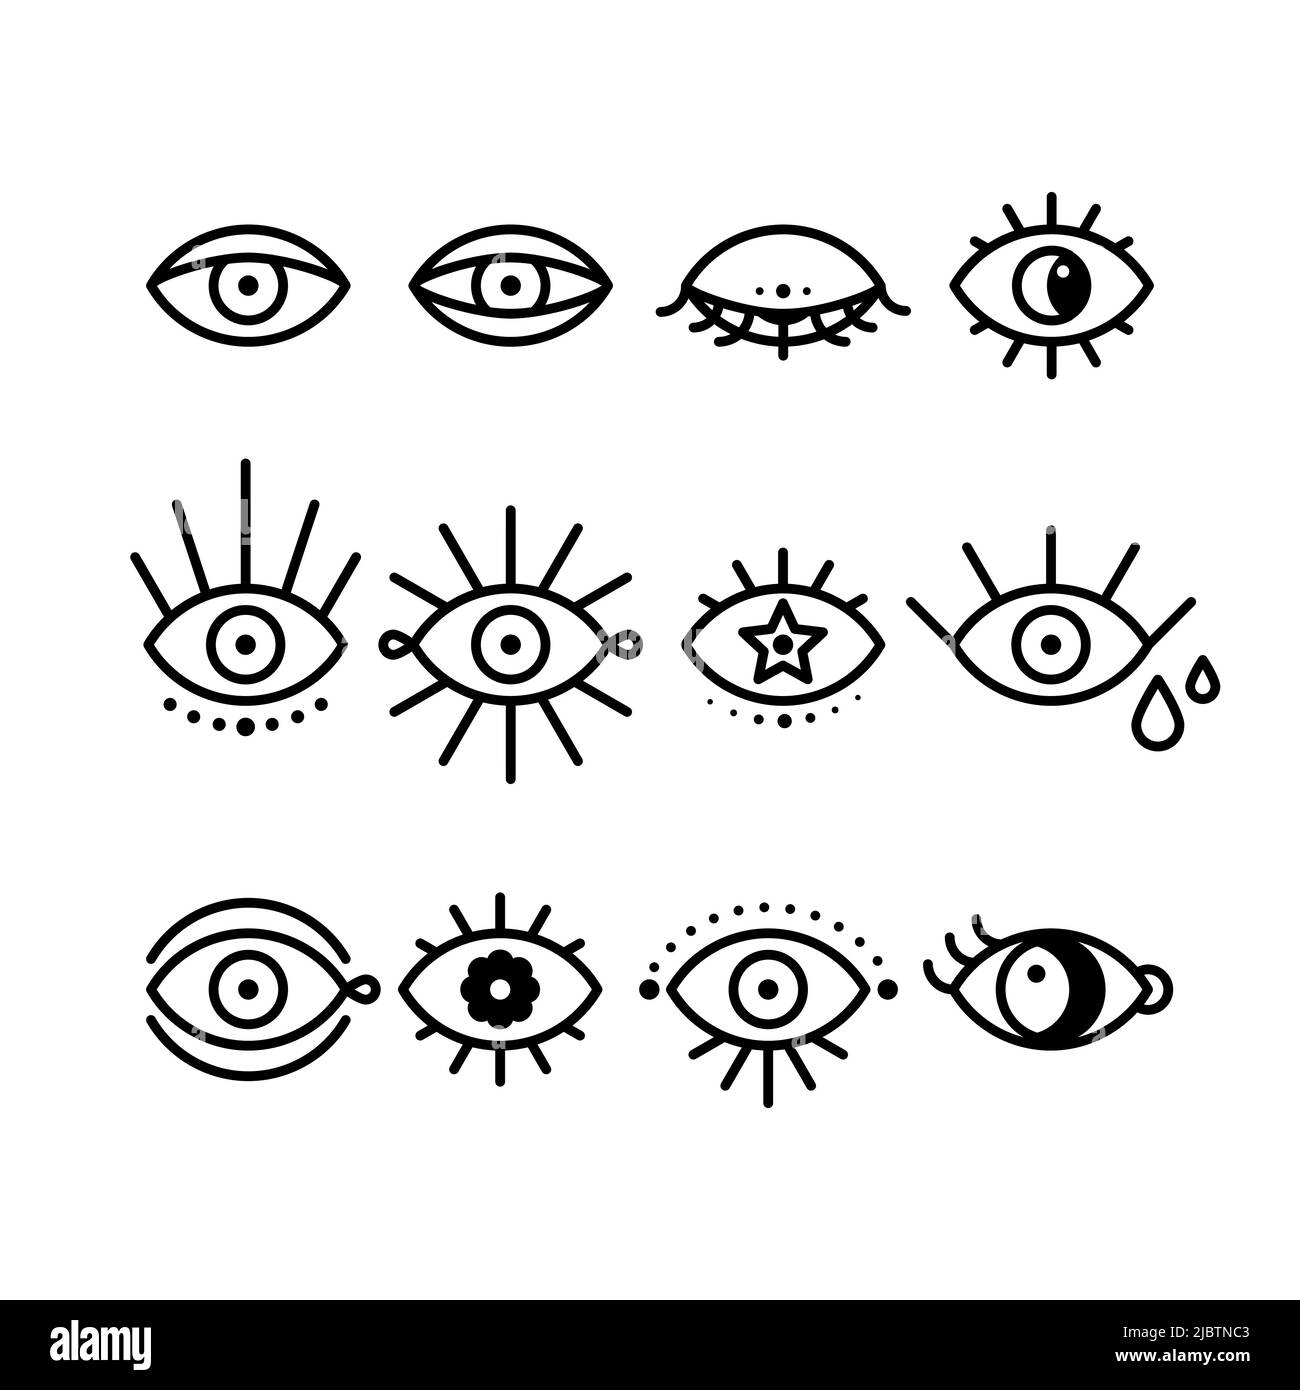 Boho Eyes Icon Set. Sammlung geometrischer linearer Augen. Schwarzer Umriss. Vektorgrafik, flaches Design Stock Vektor